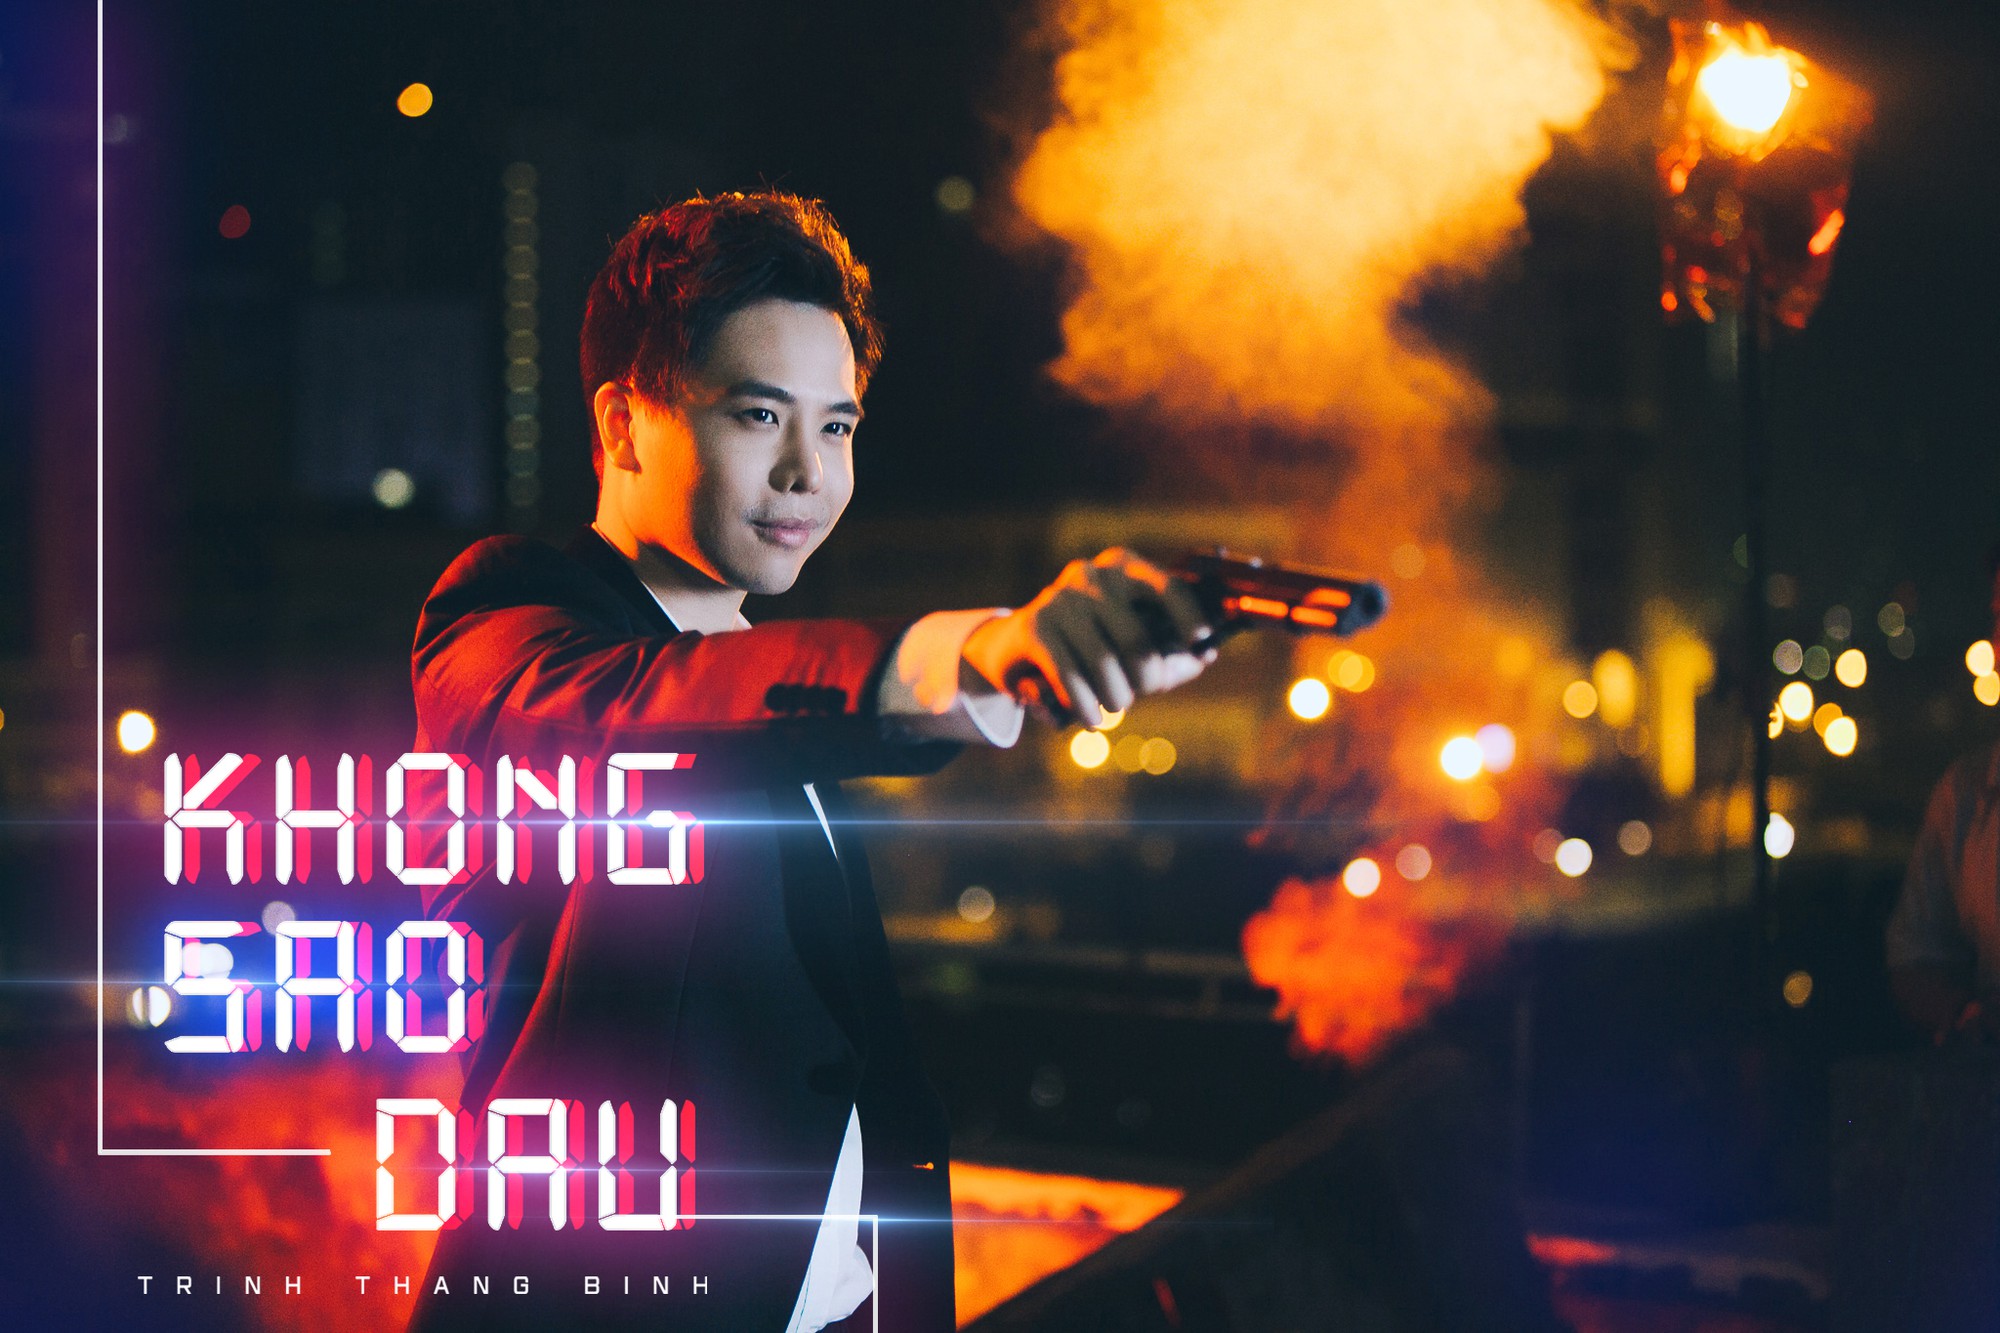 Trịnh Thăng Bình lột xác làm hacker chất ngầu, hé lộ cảnh bị bắn đầy bí ẩn trong teaser MV mới - Ảnh 2.